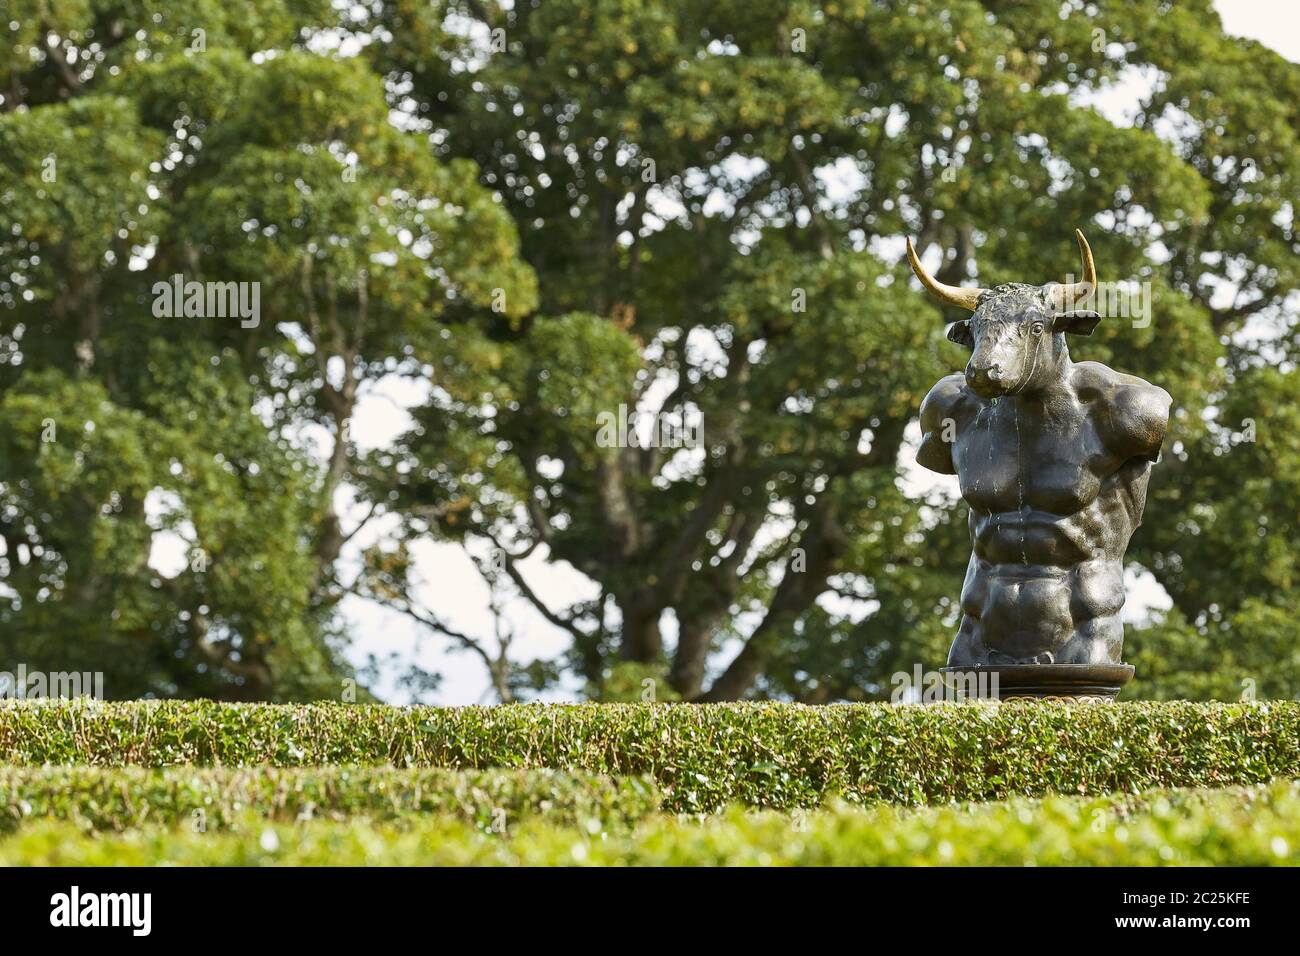 Labyrinthe de haies Holly dans le jardin clos du château de Cawdor avec sculpture de bronze minotaure. Banque D'Images